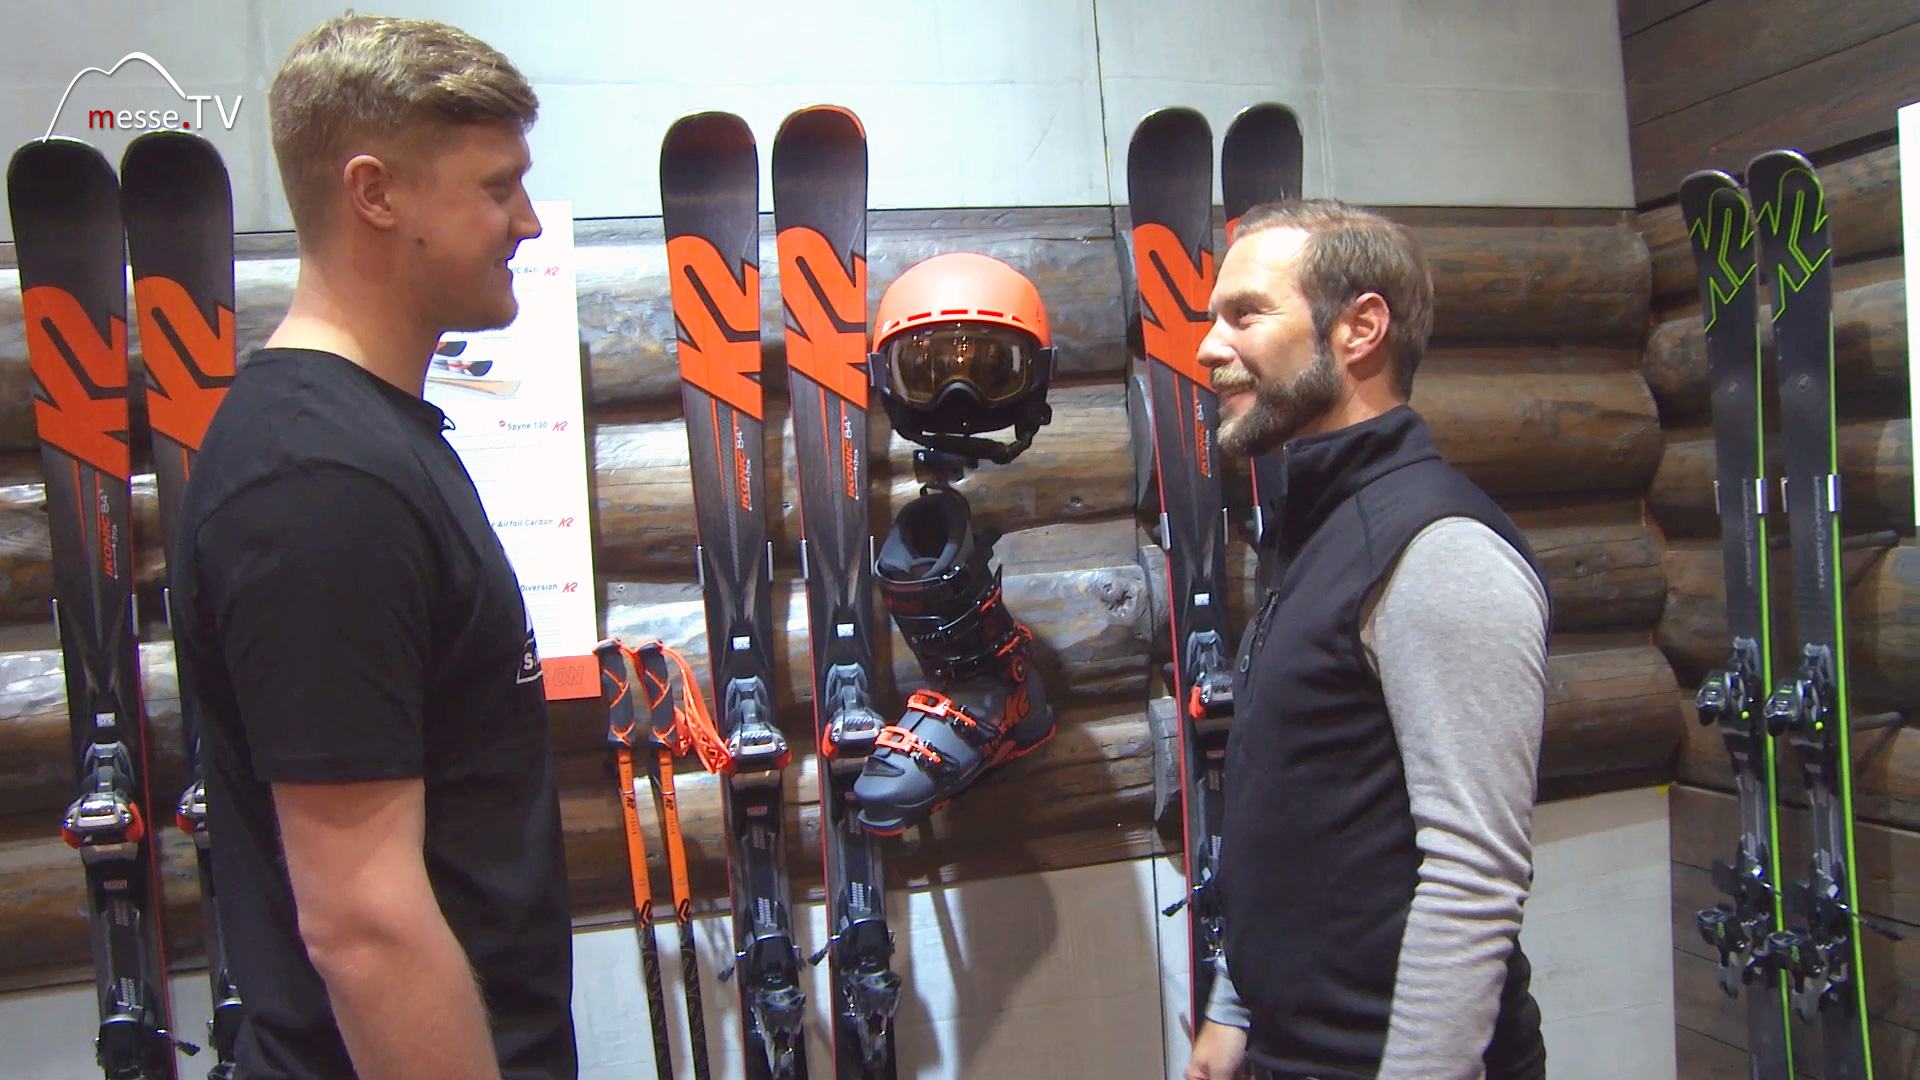 MesseTV Interview K2 Skis Ispo 2017 Fair Munich